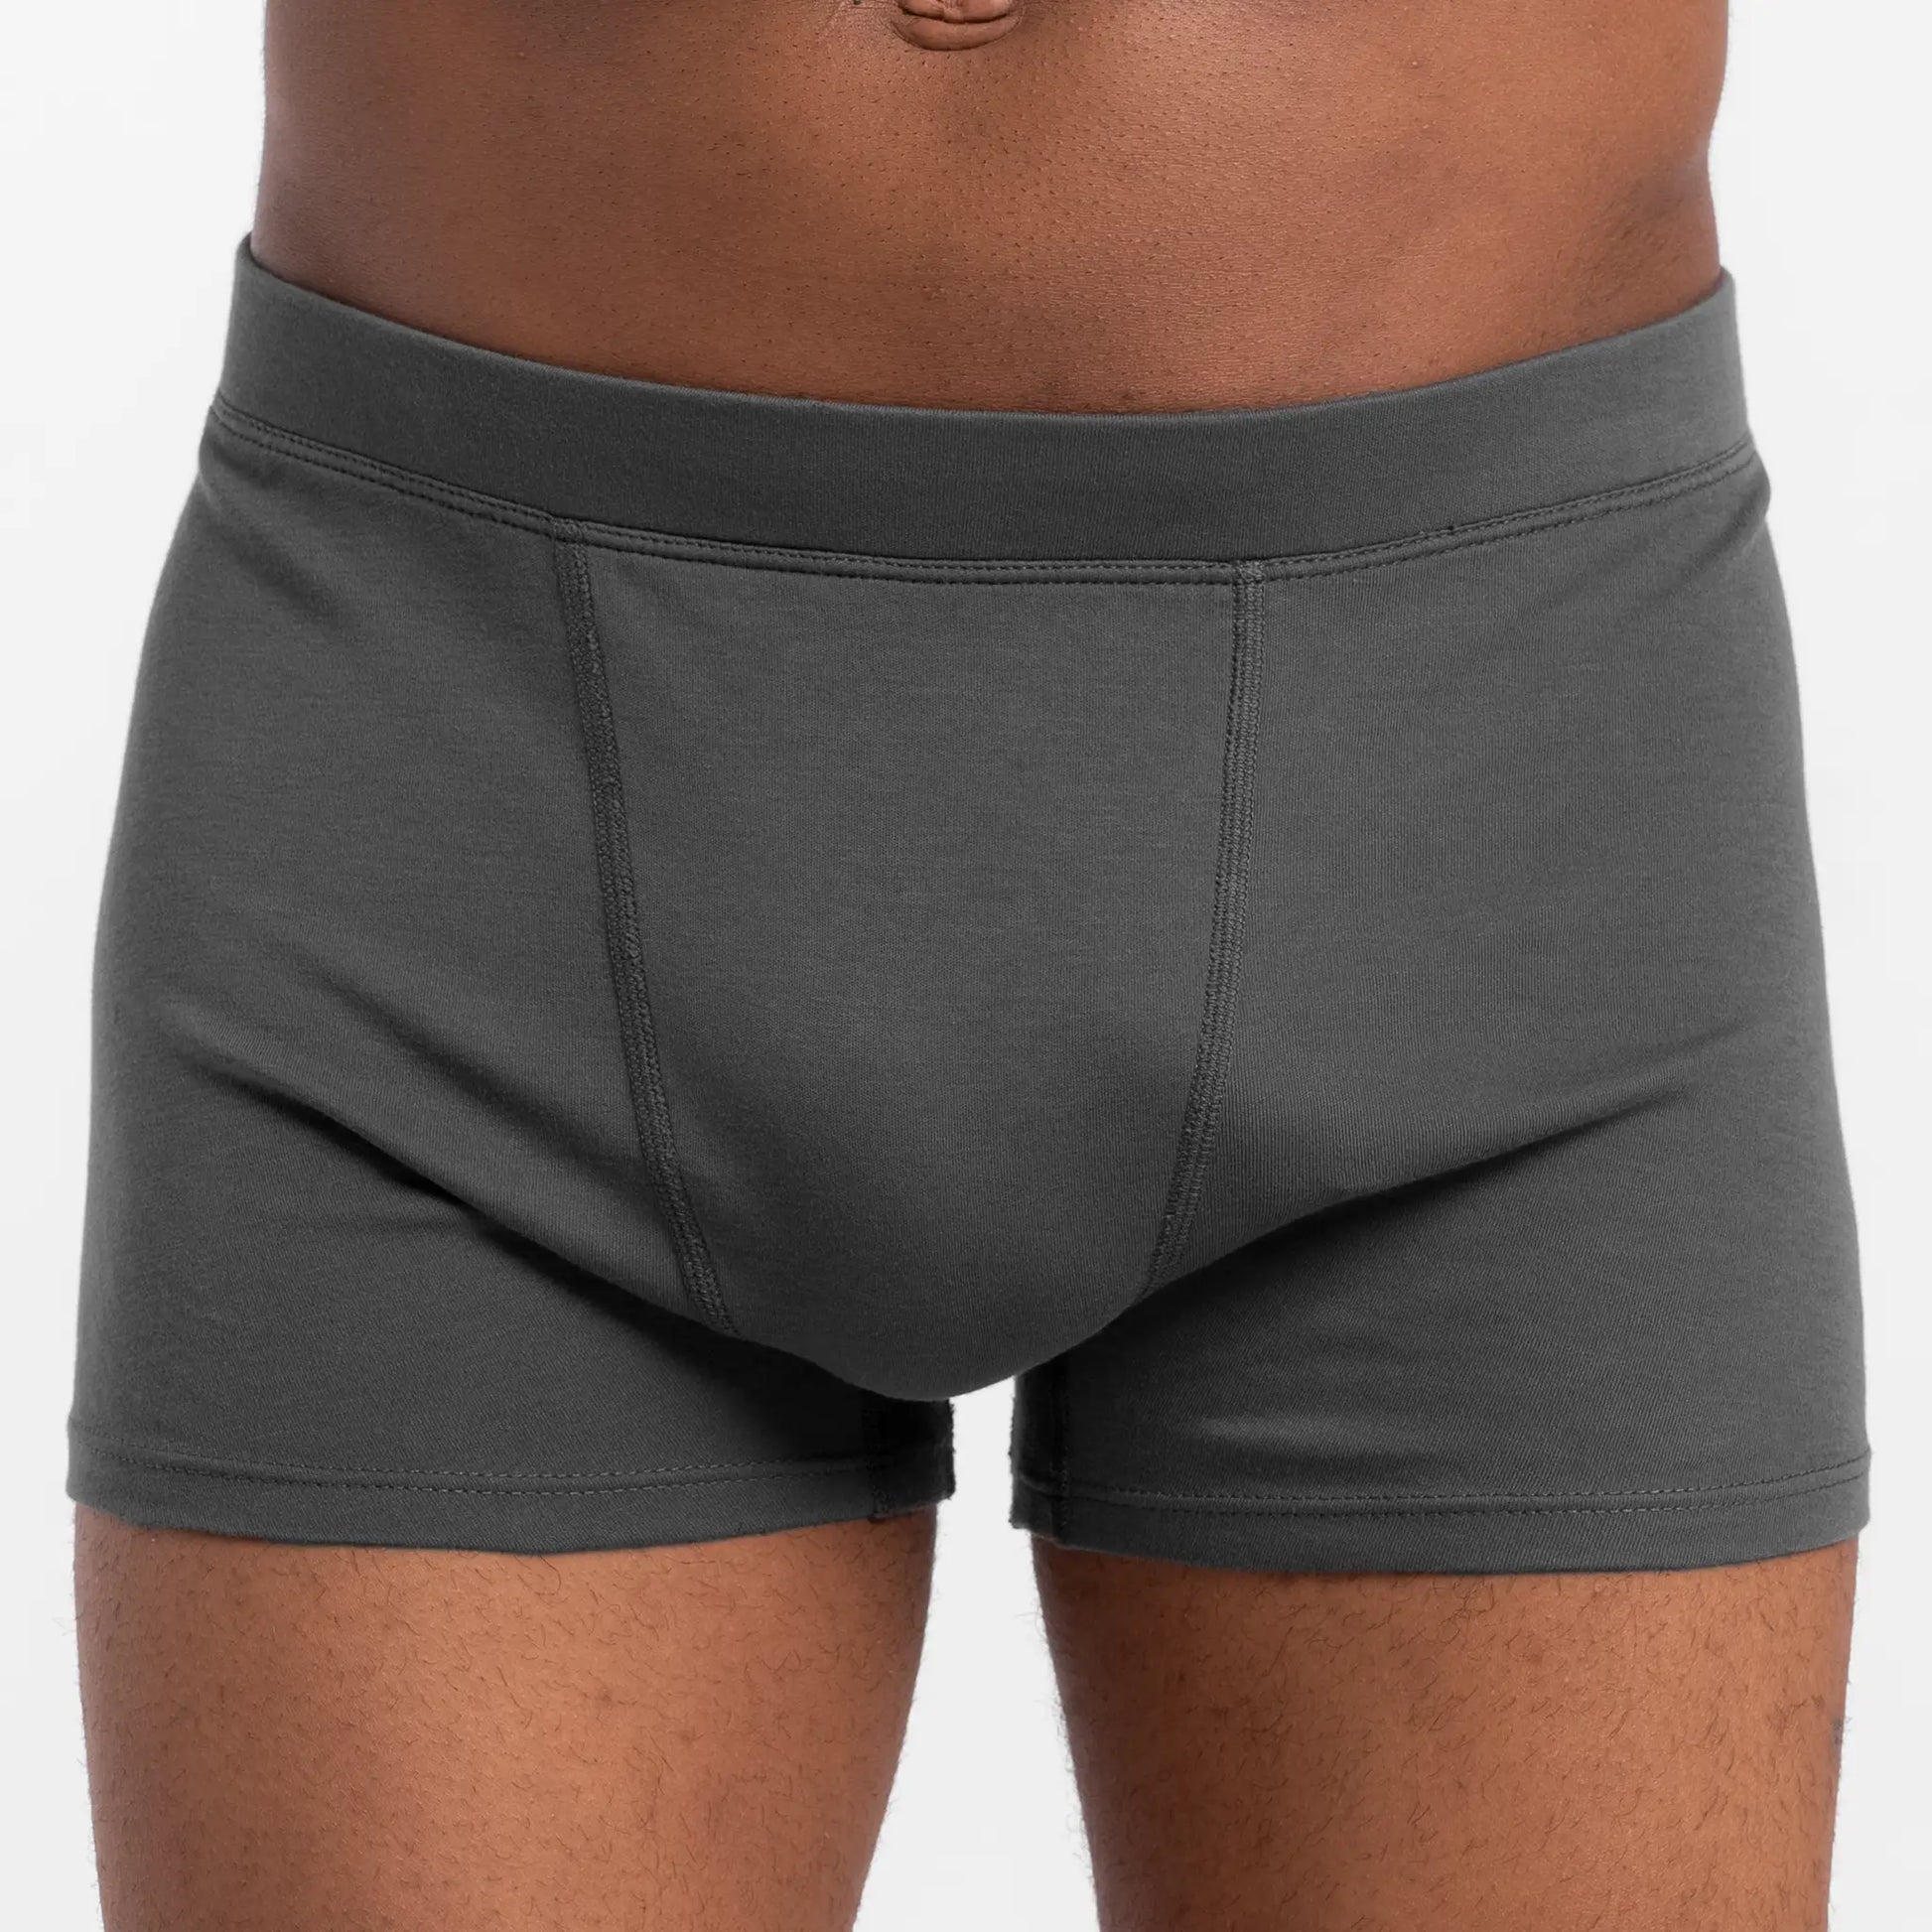 Men Underwear pure cotton boxer underwear for men boxers sale